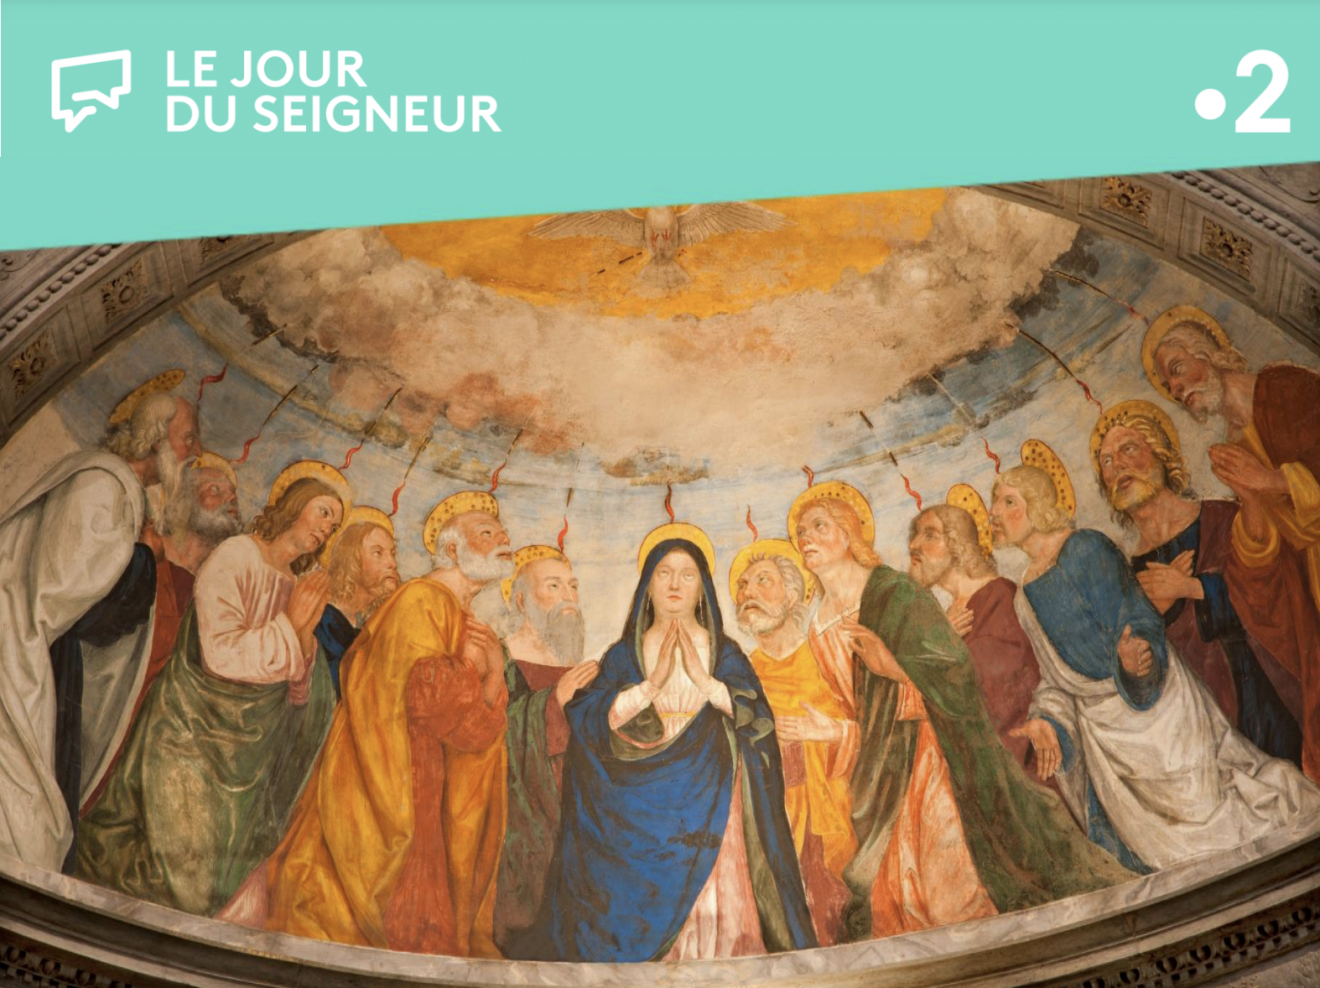 Messe de la Pentecôte en Eurovision en direct de la Cathédrale Notre-Dame de Créteil le 5 juin à 11h. Retrouver l'homélie de Mgr Blanchet